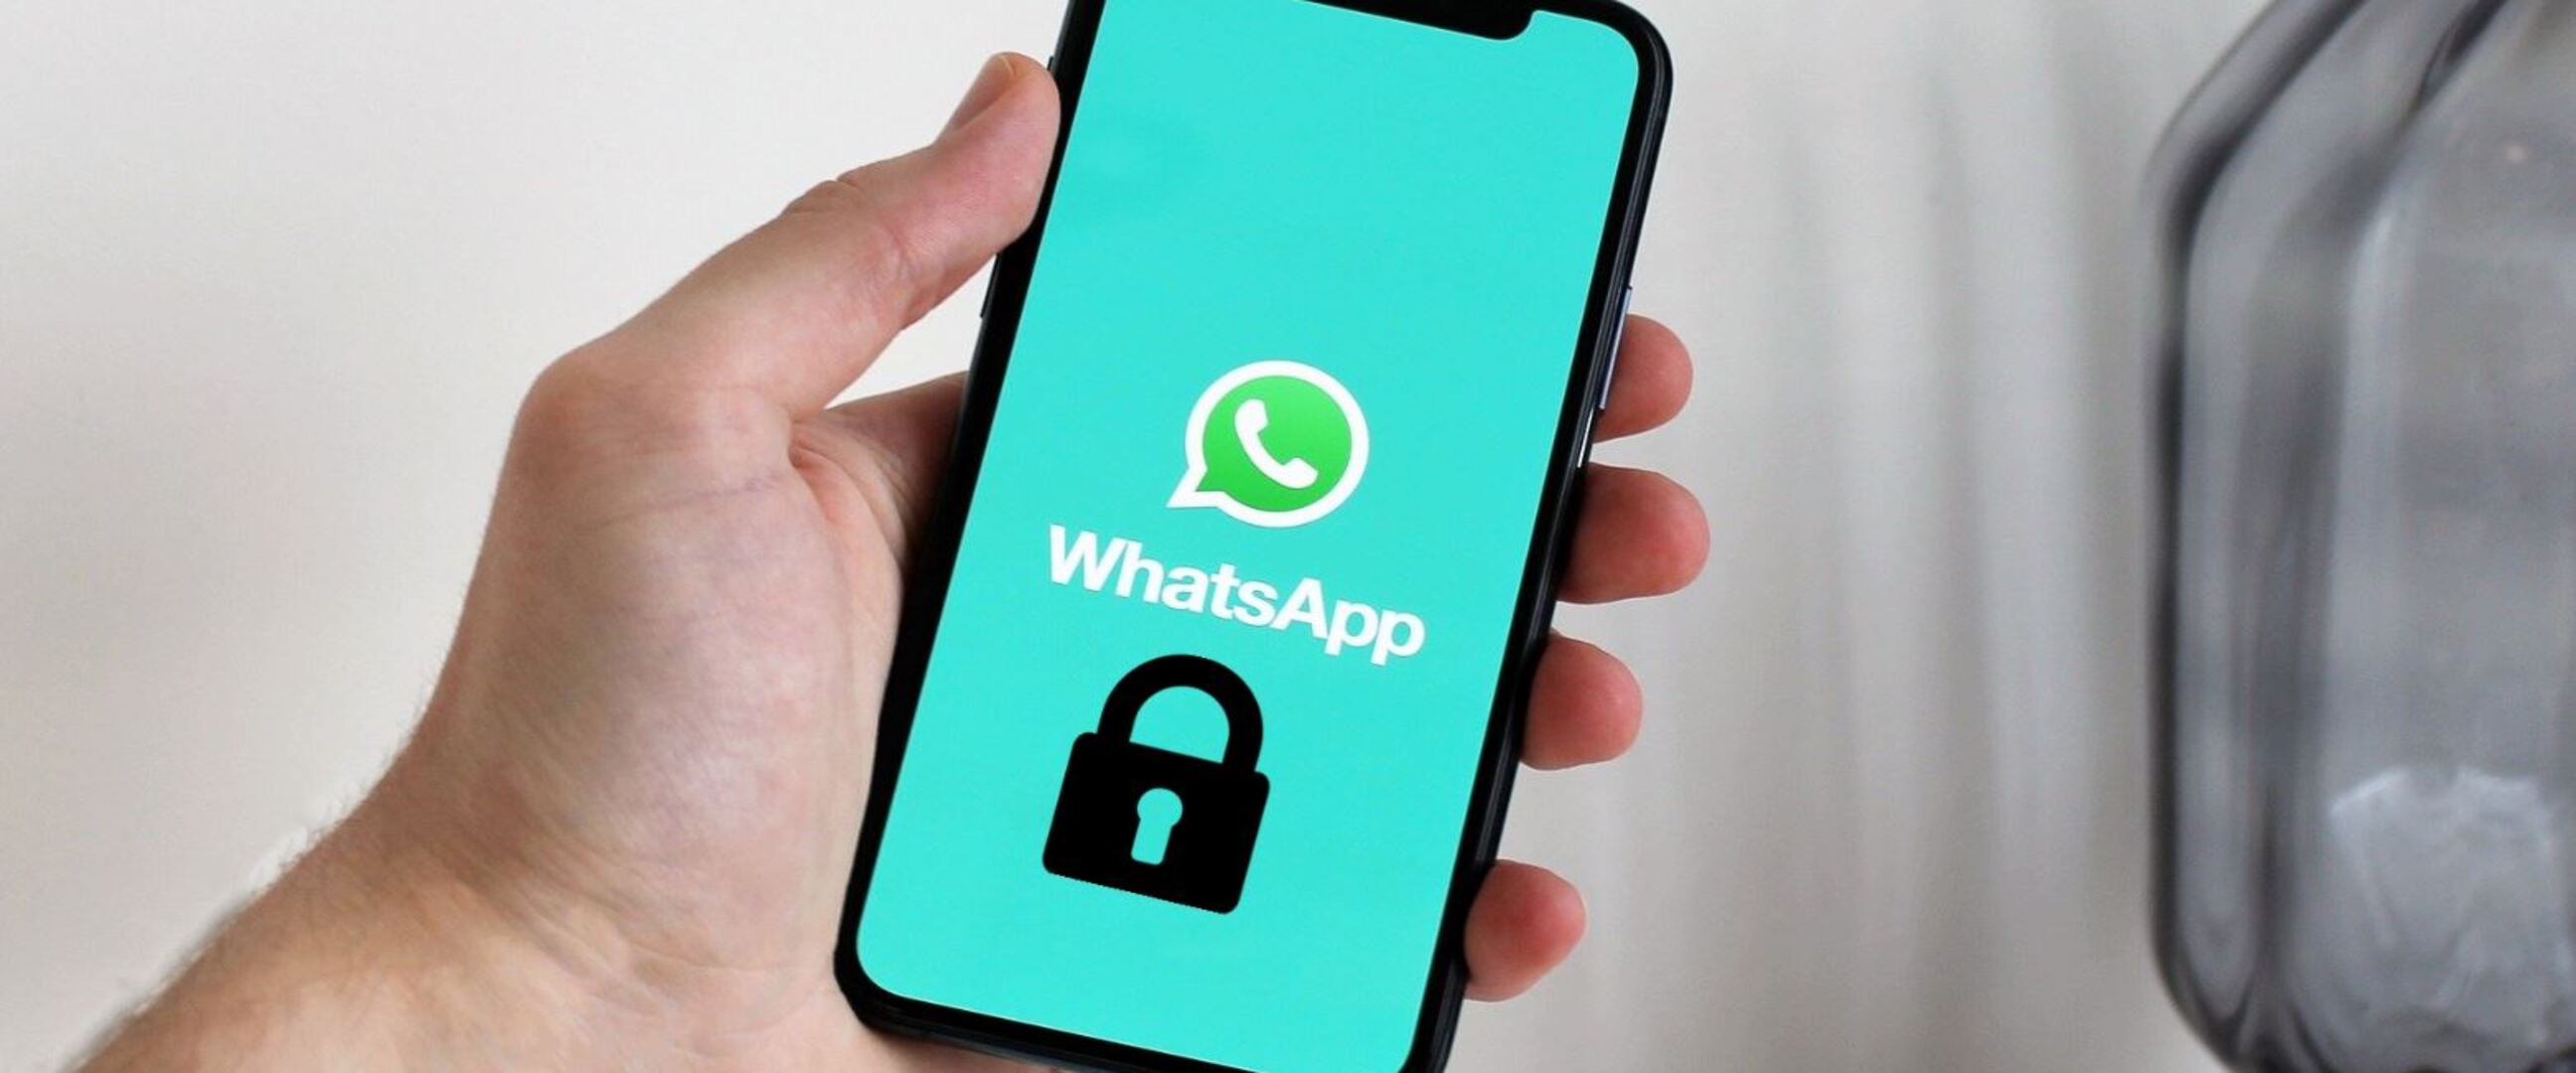 7 Cara mengunci aplikasi WhatsApp, privasi lebih terjaga